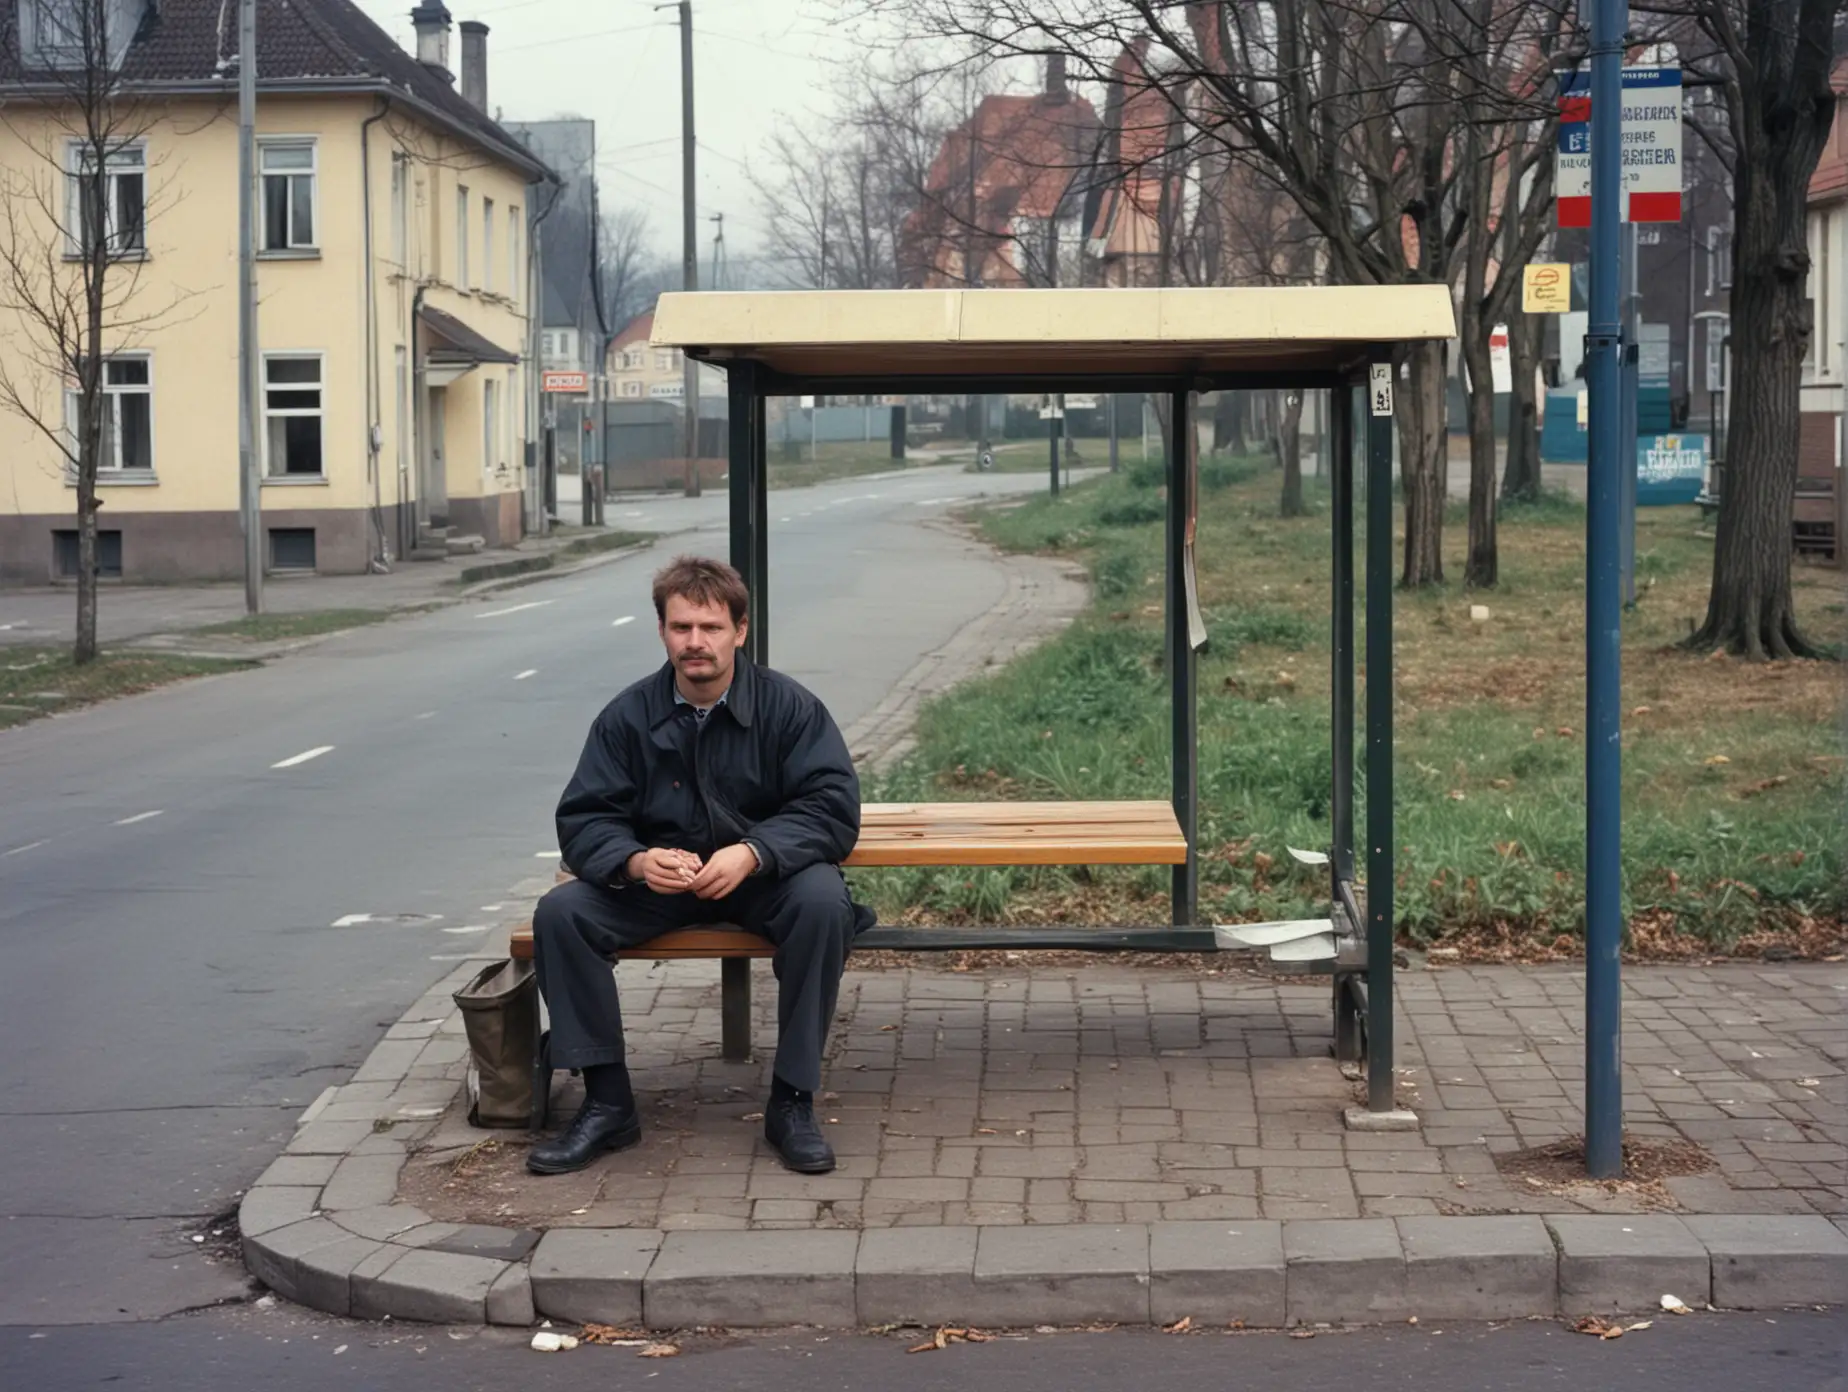 Ostdeutsches Dorf 1992. Außenseiter sitzt an bushaltestelle.  